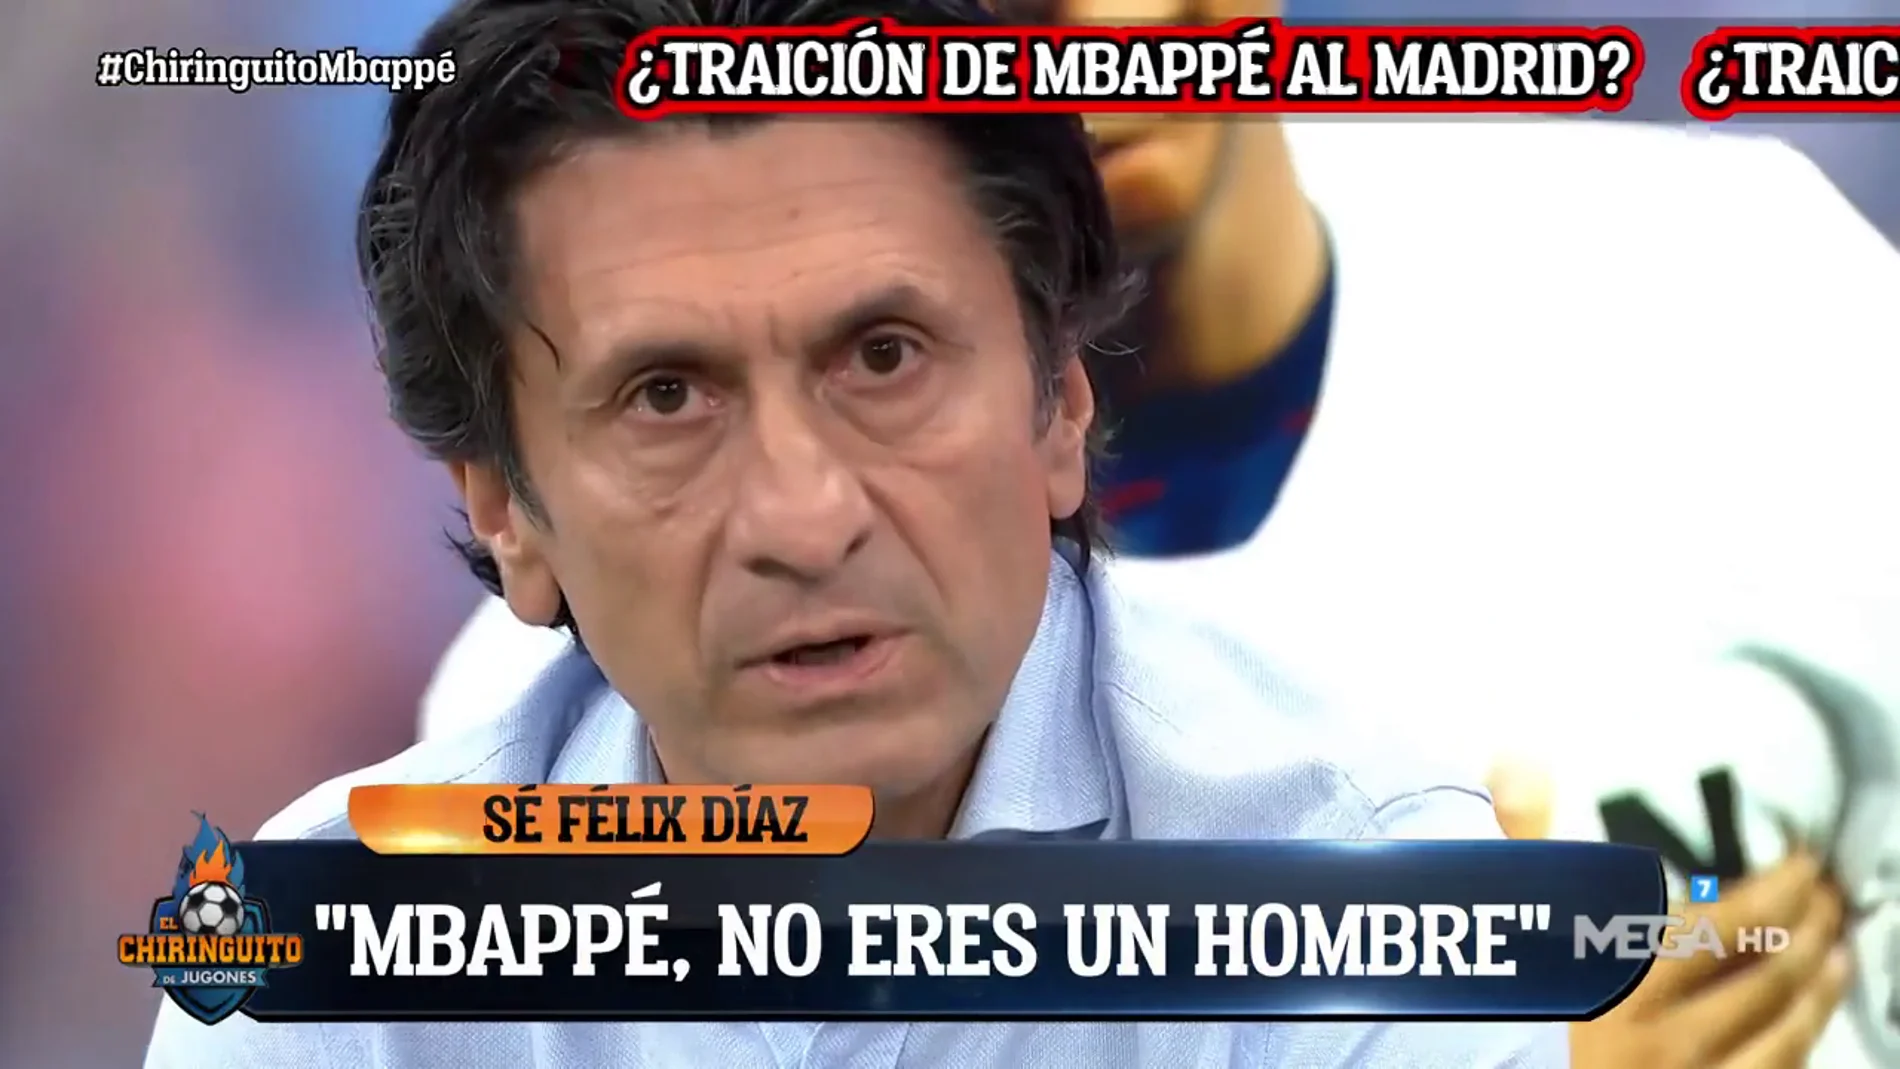 José Félix Díaz: "Mbappé, no eres un hombre, eres un traidor"